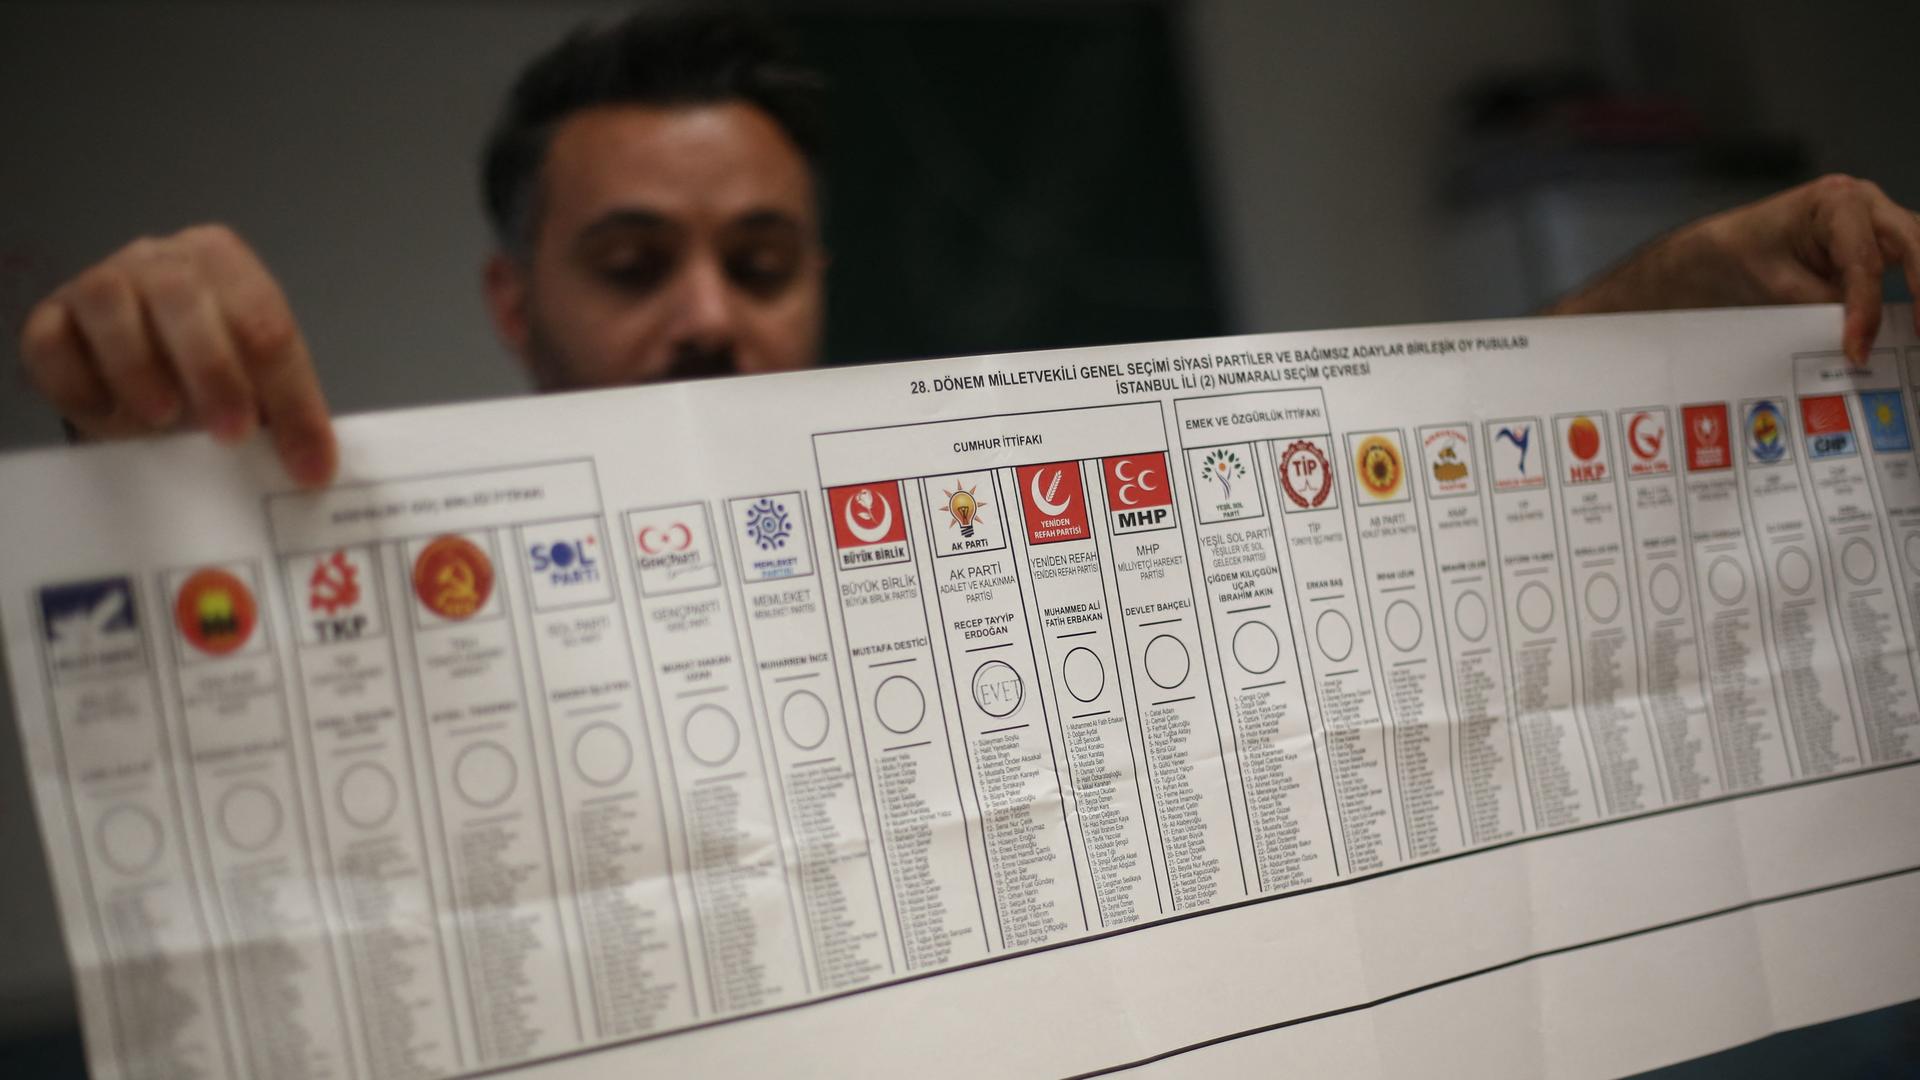 Ein Mann hält einen Stimmzettel der Wahl am 14. Mai in die Höhe. Darauf sind die Symbole der Parteien, die zur Abstimmung standen.